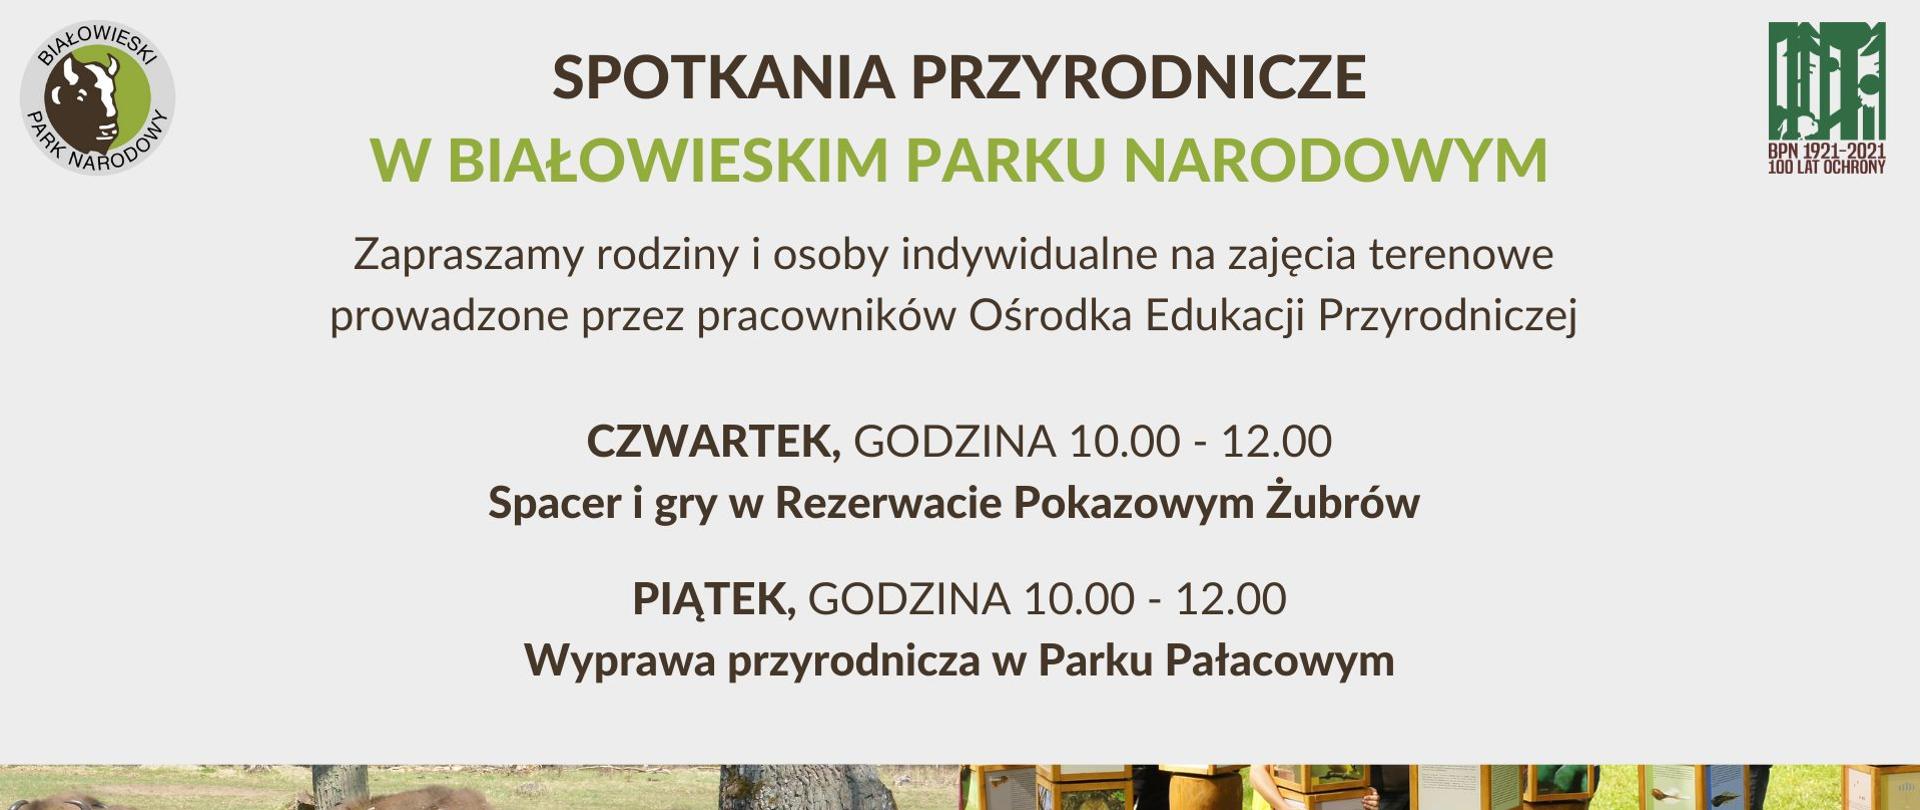 Spotkania przyrodnicze w Białowieskim Parku Narodowym - informacja o terminie i miejscu spotkania